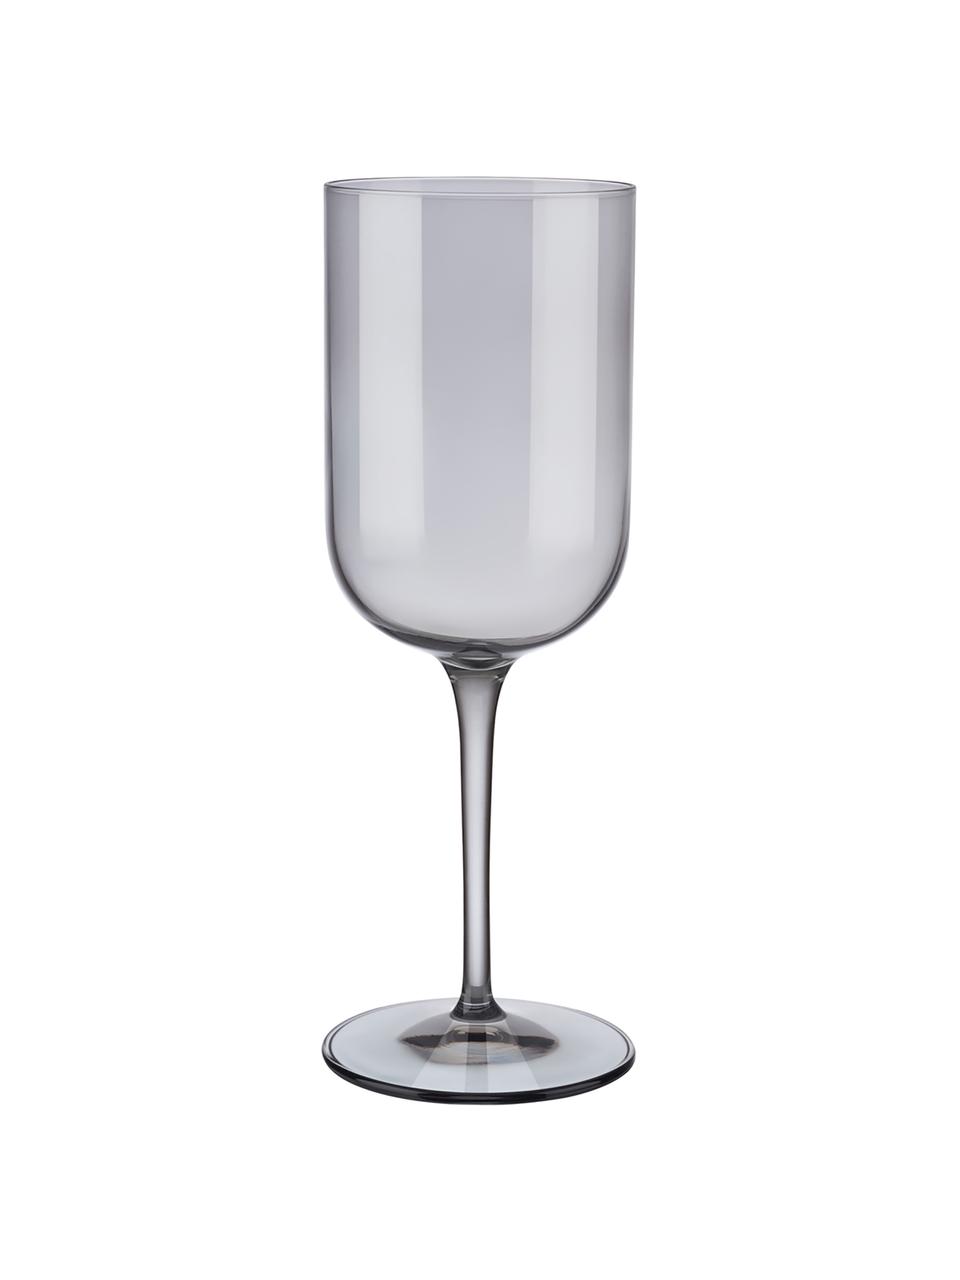 Wijnglazen Fuum in grijs, 4 stuks, Glas, Grijs, transparant, Ø 8 x H 22 cm, 400 ml